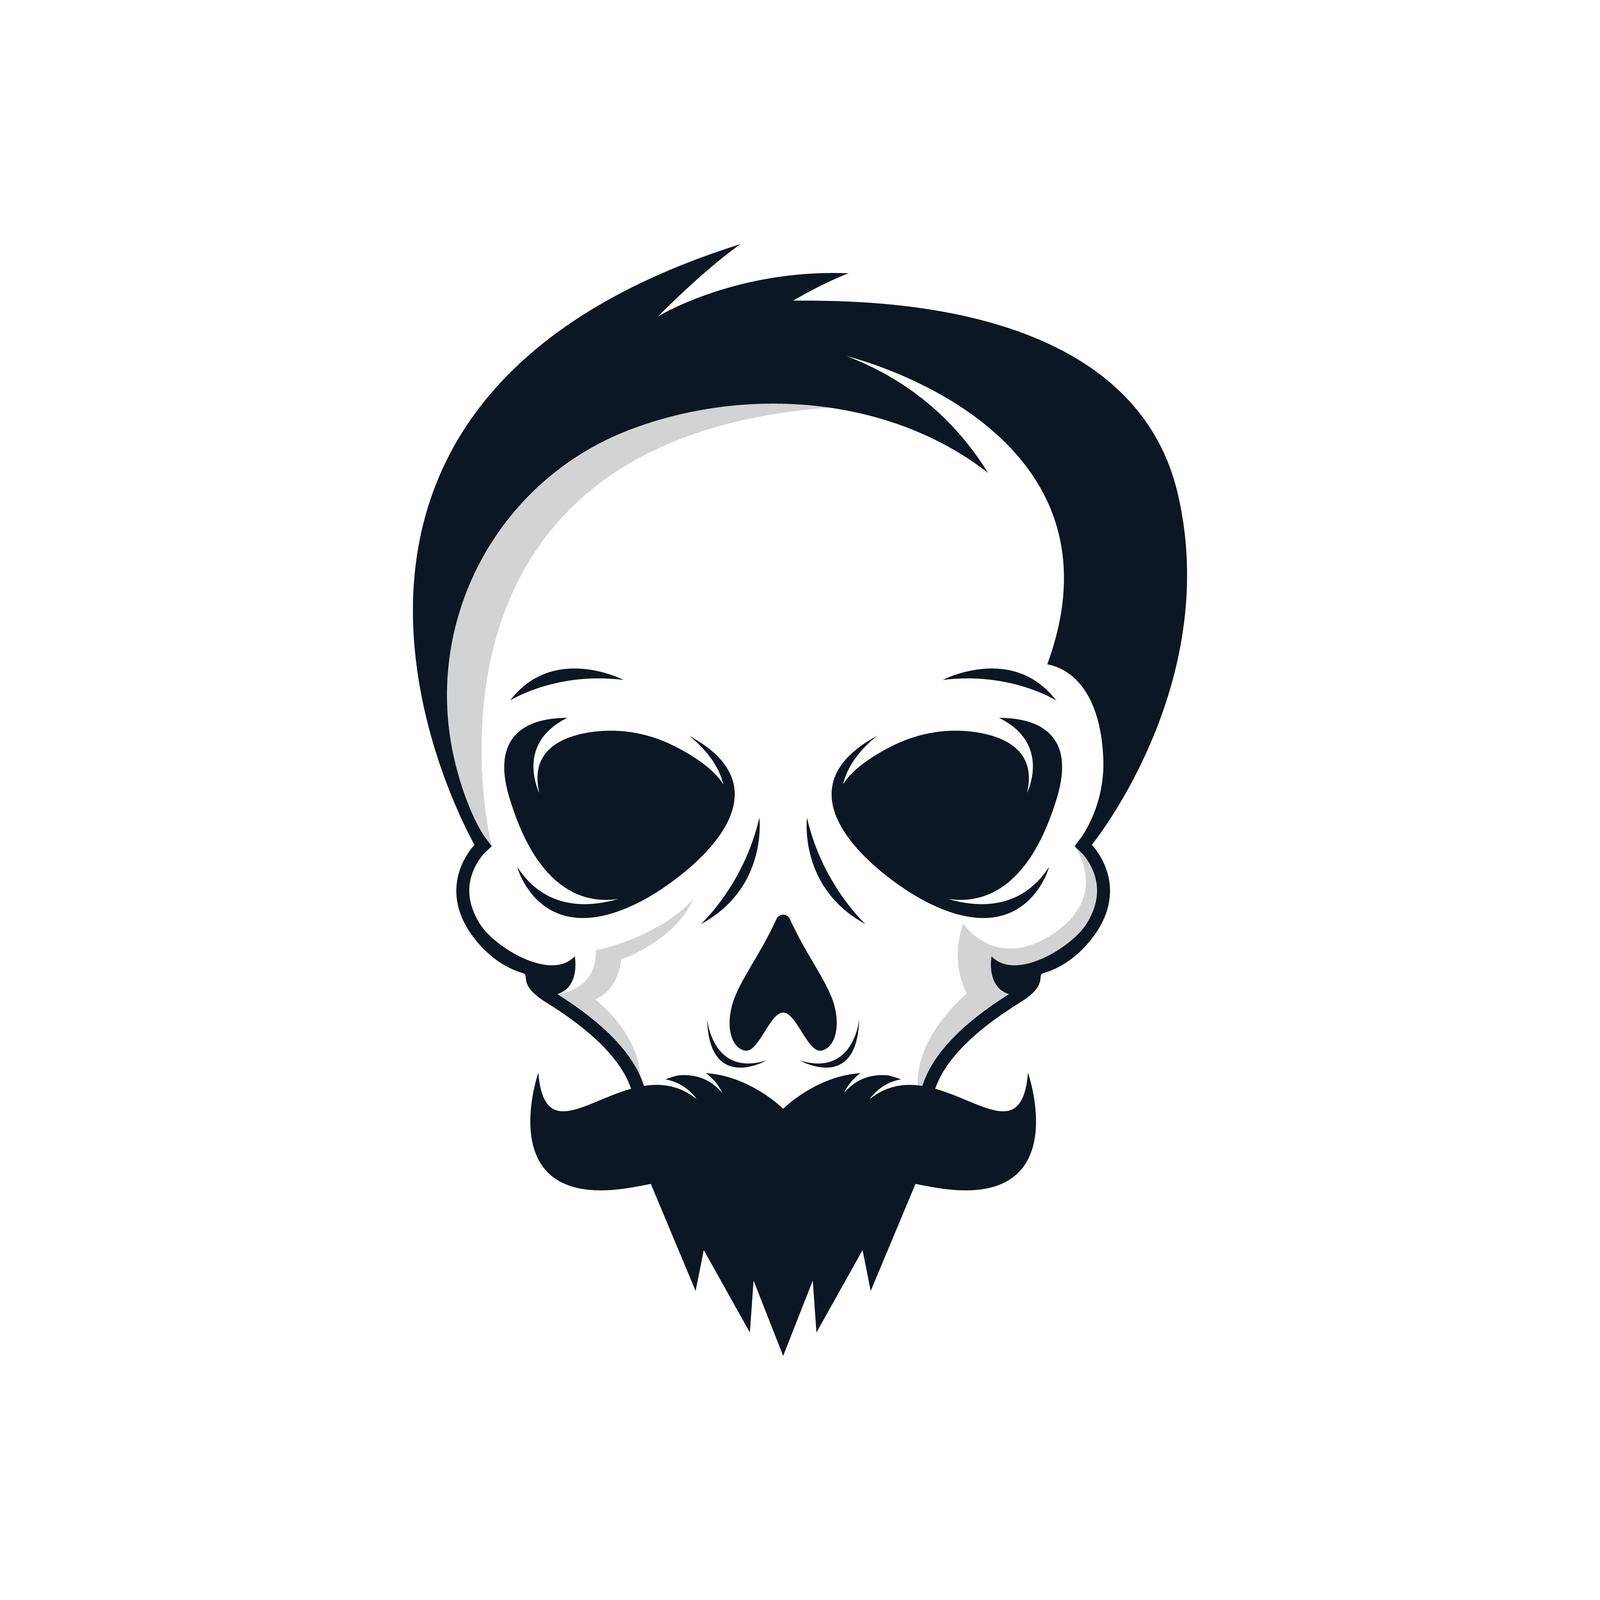 Skull vector icon illustration by Fat17